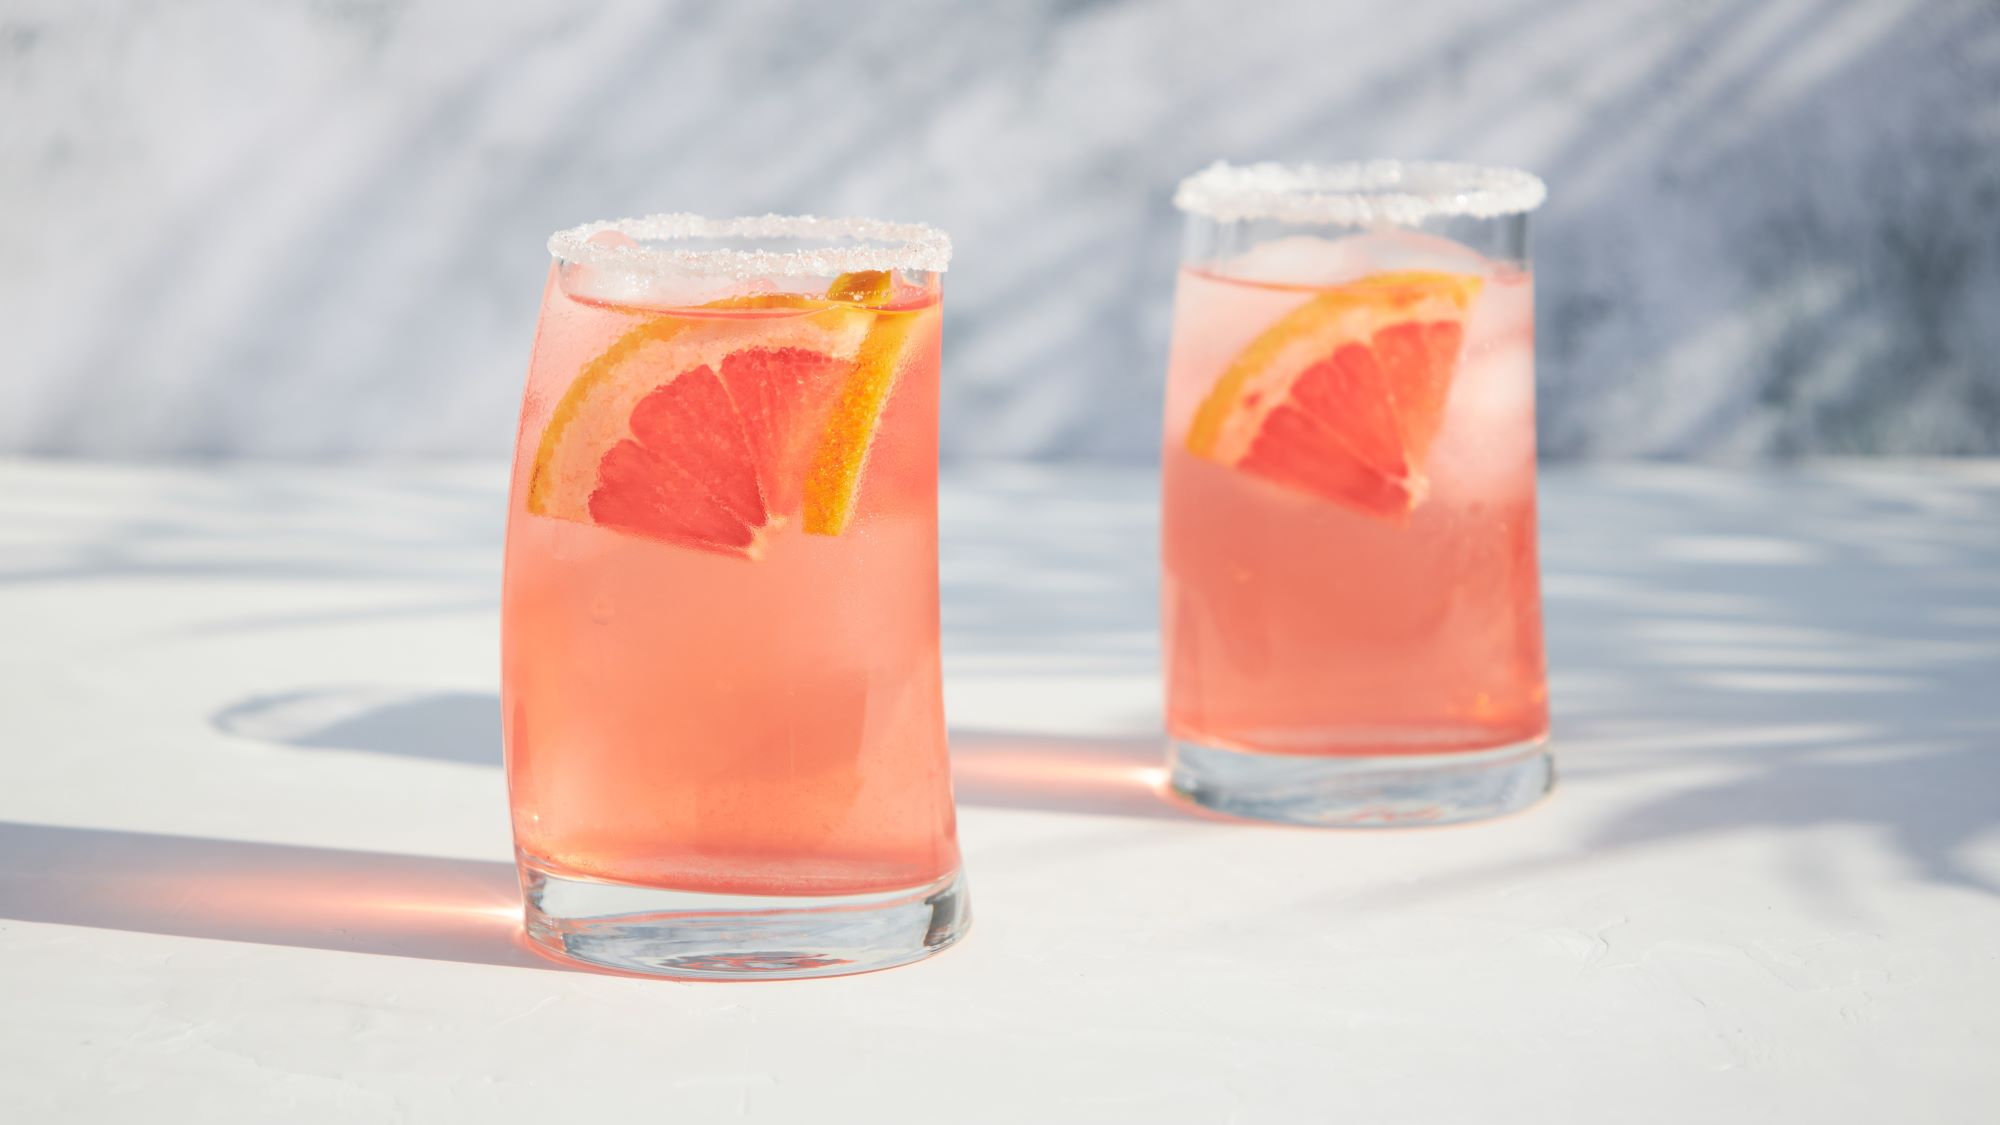 Orange-pinkfarbener Cocktail garniert mit Grapefruit in zwei gebogenen Gläsern.